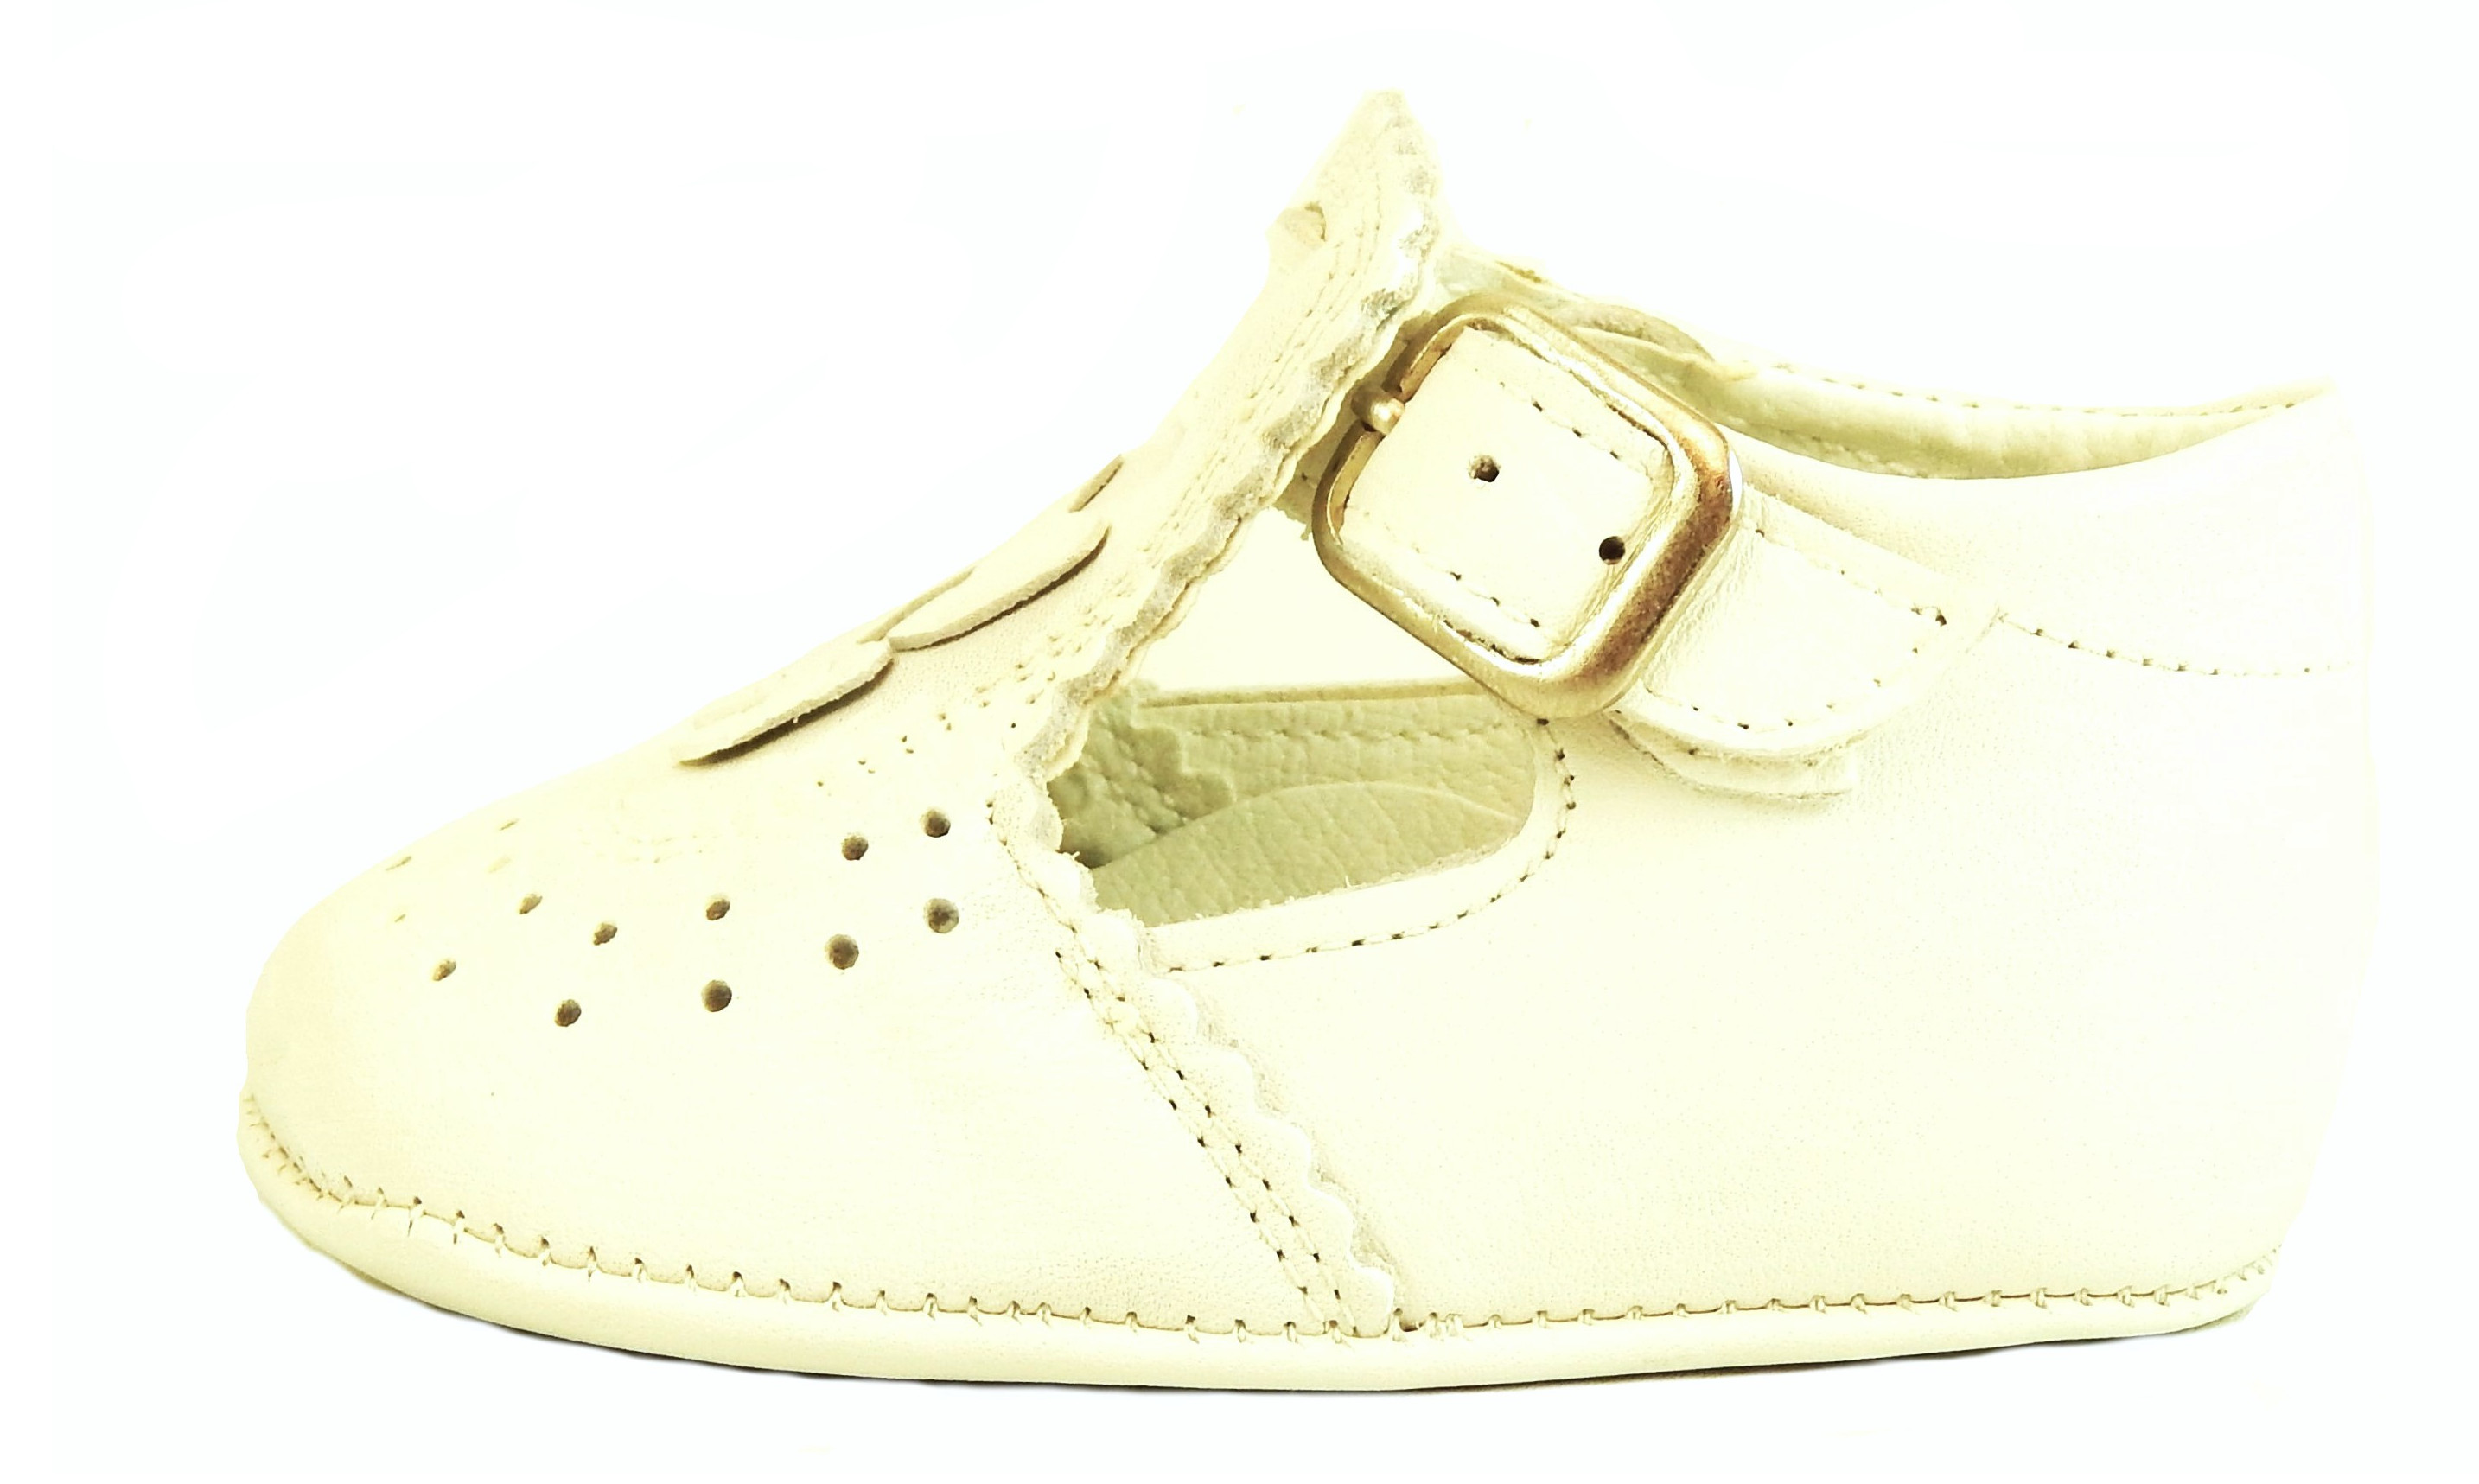 LA-233 - Ivory T-strap Crib Shoes - Euro 17 Size 1